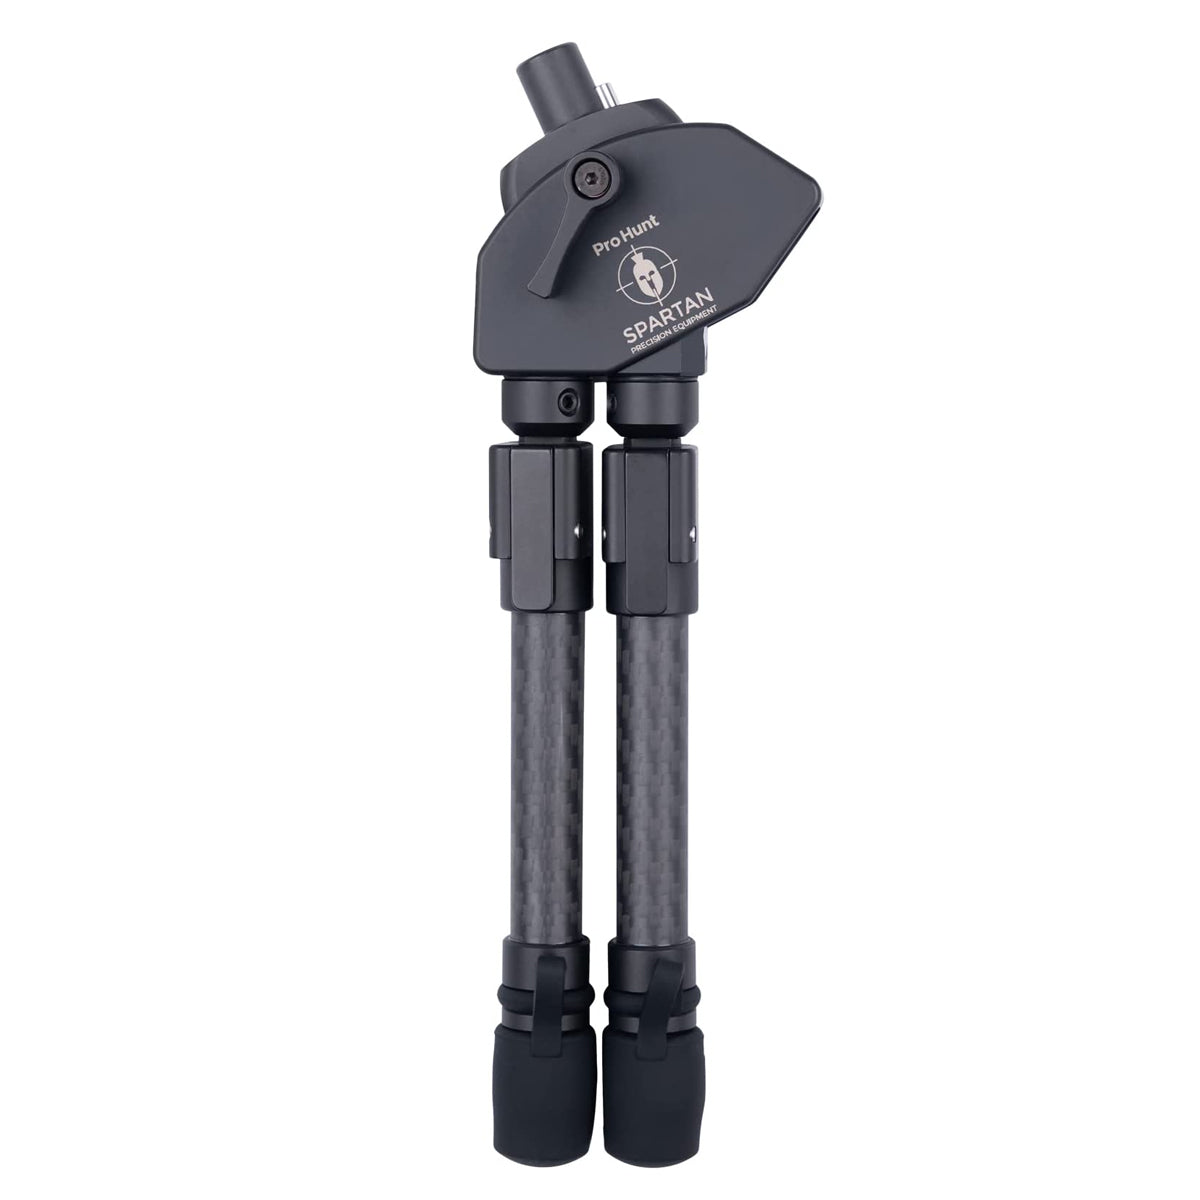 Spartan Precision Equipment ProHunt TAC Bipod in Standard by GOHUNT | Spartan Precision Equipment - GOHUNT Shop